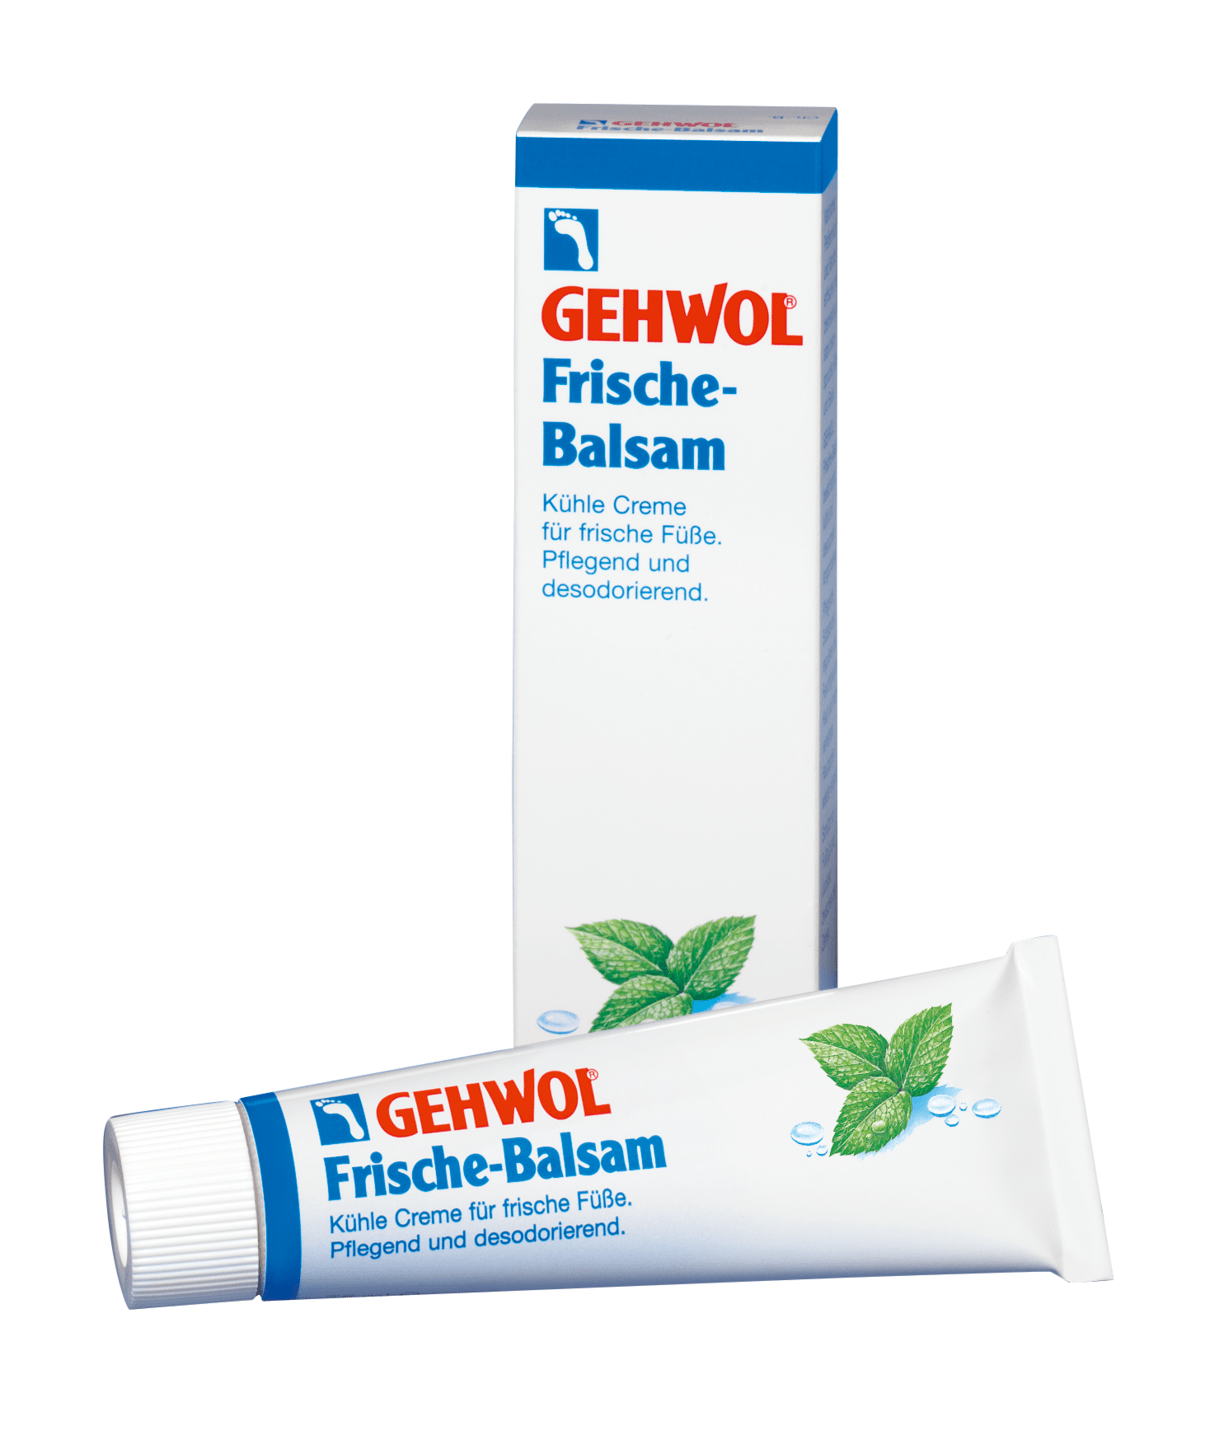 GEHWOL - Frische-Balsam, 75 ml